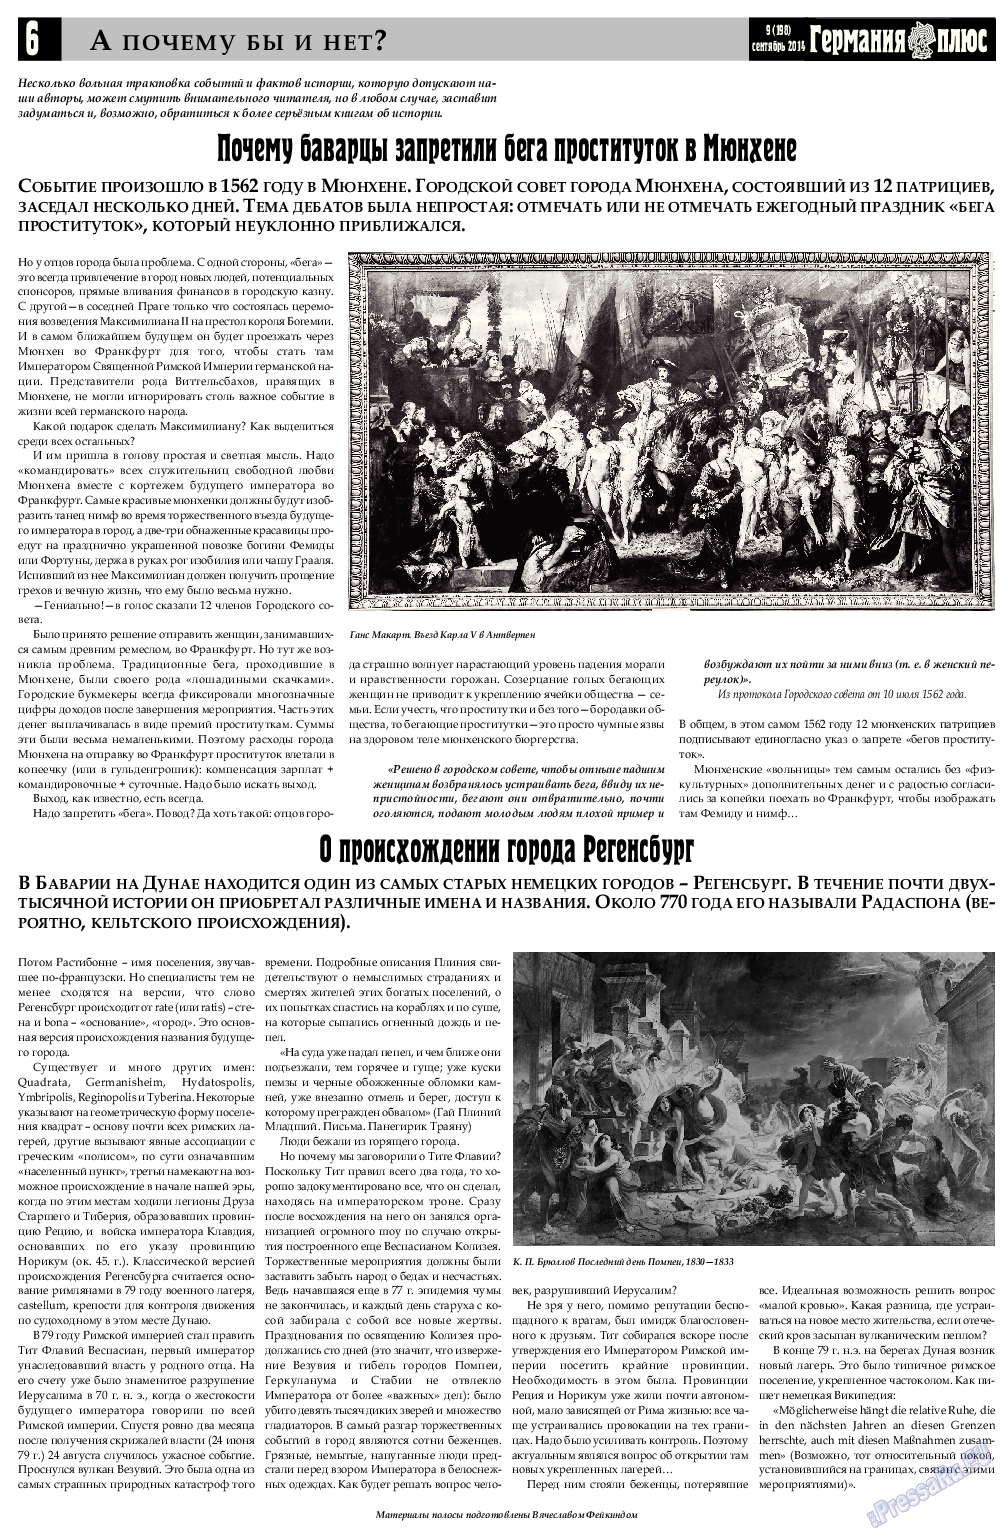 Германия плюс, газета. 2014 №8 стр.6